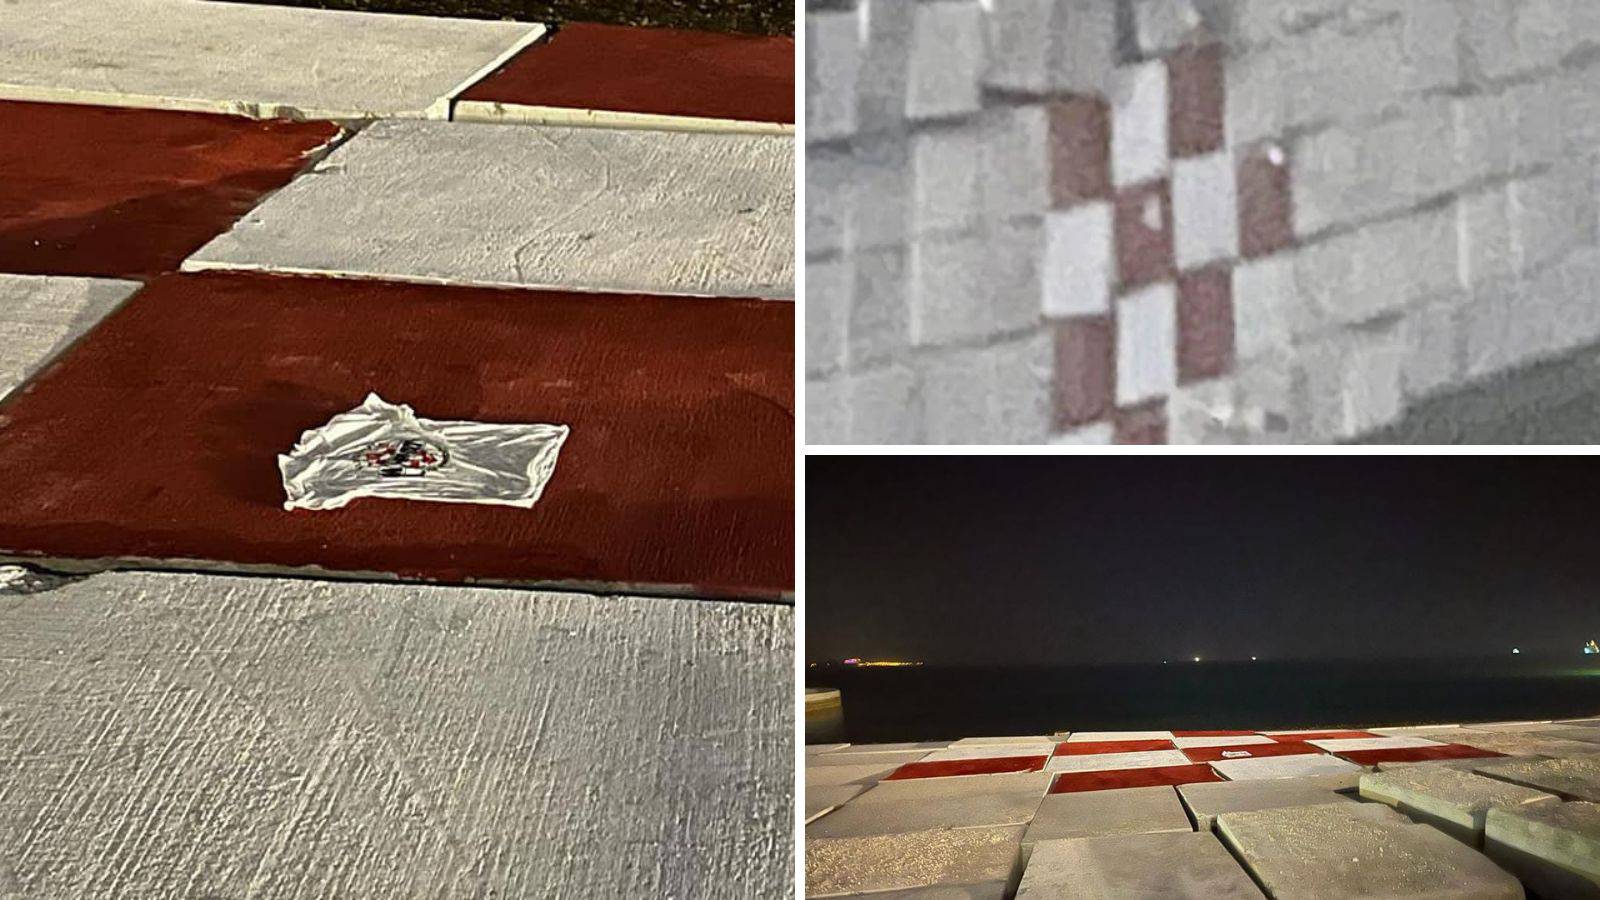 Tajna noćna akcija hrvatskih navijača u Dohi: Pogledajte što su napravili uz hotel na plaži